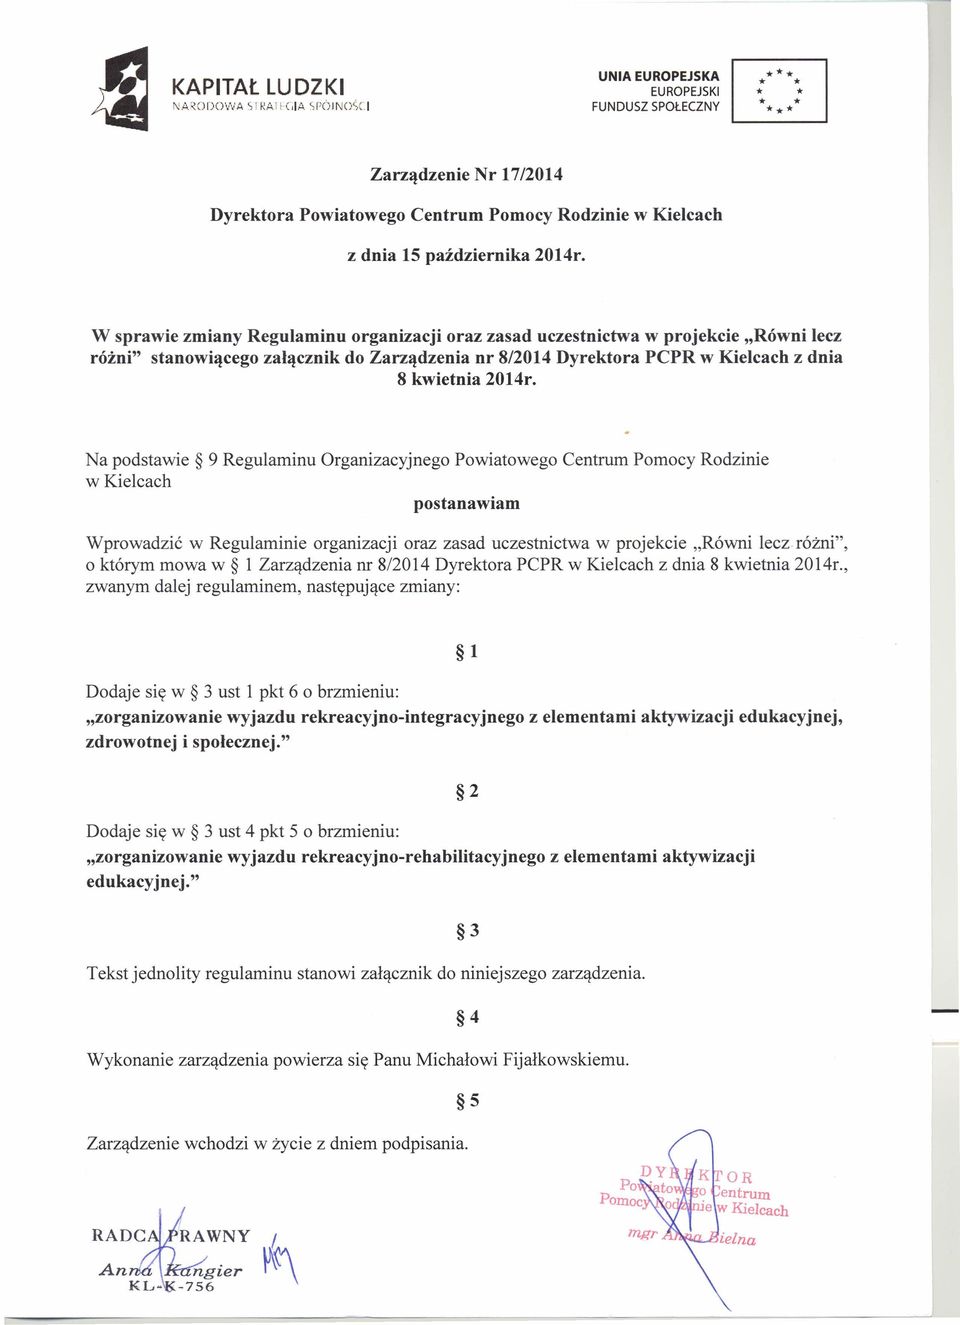 W sprawie zmiany Regulaminu organizacji oraz zasad uczestnictwa w projekcie "Równi lecz różni" stanowiącego załącznik do Zarządzenia nr 8/2014 Dyrektora PCPR w Kielcach z dnia 8 kwietnia 2014r.